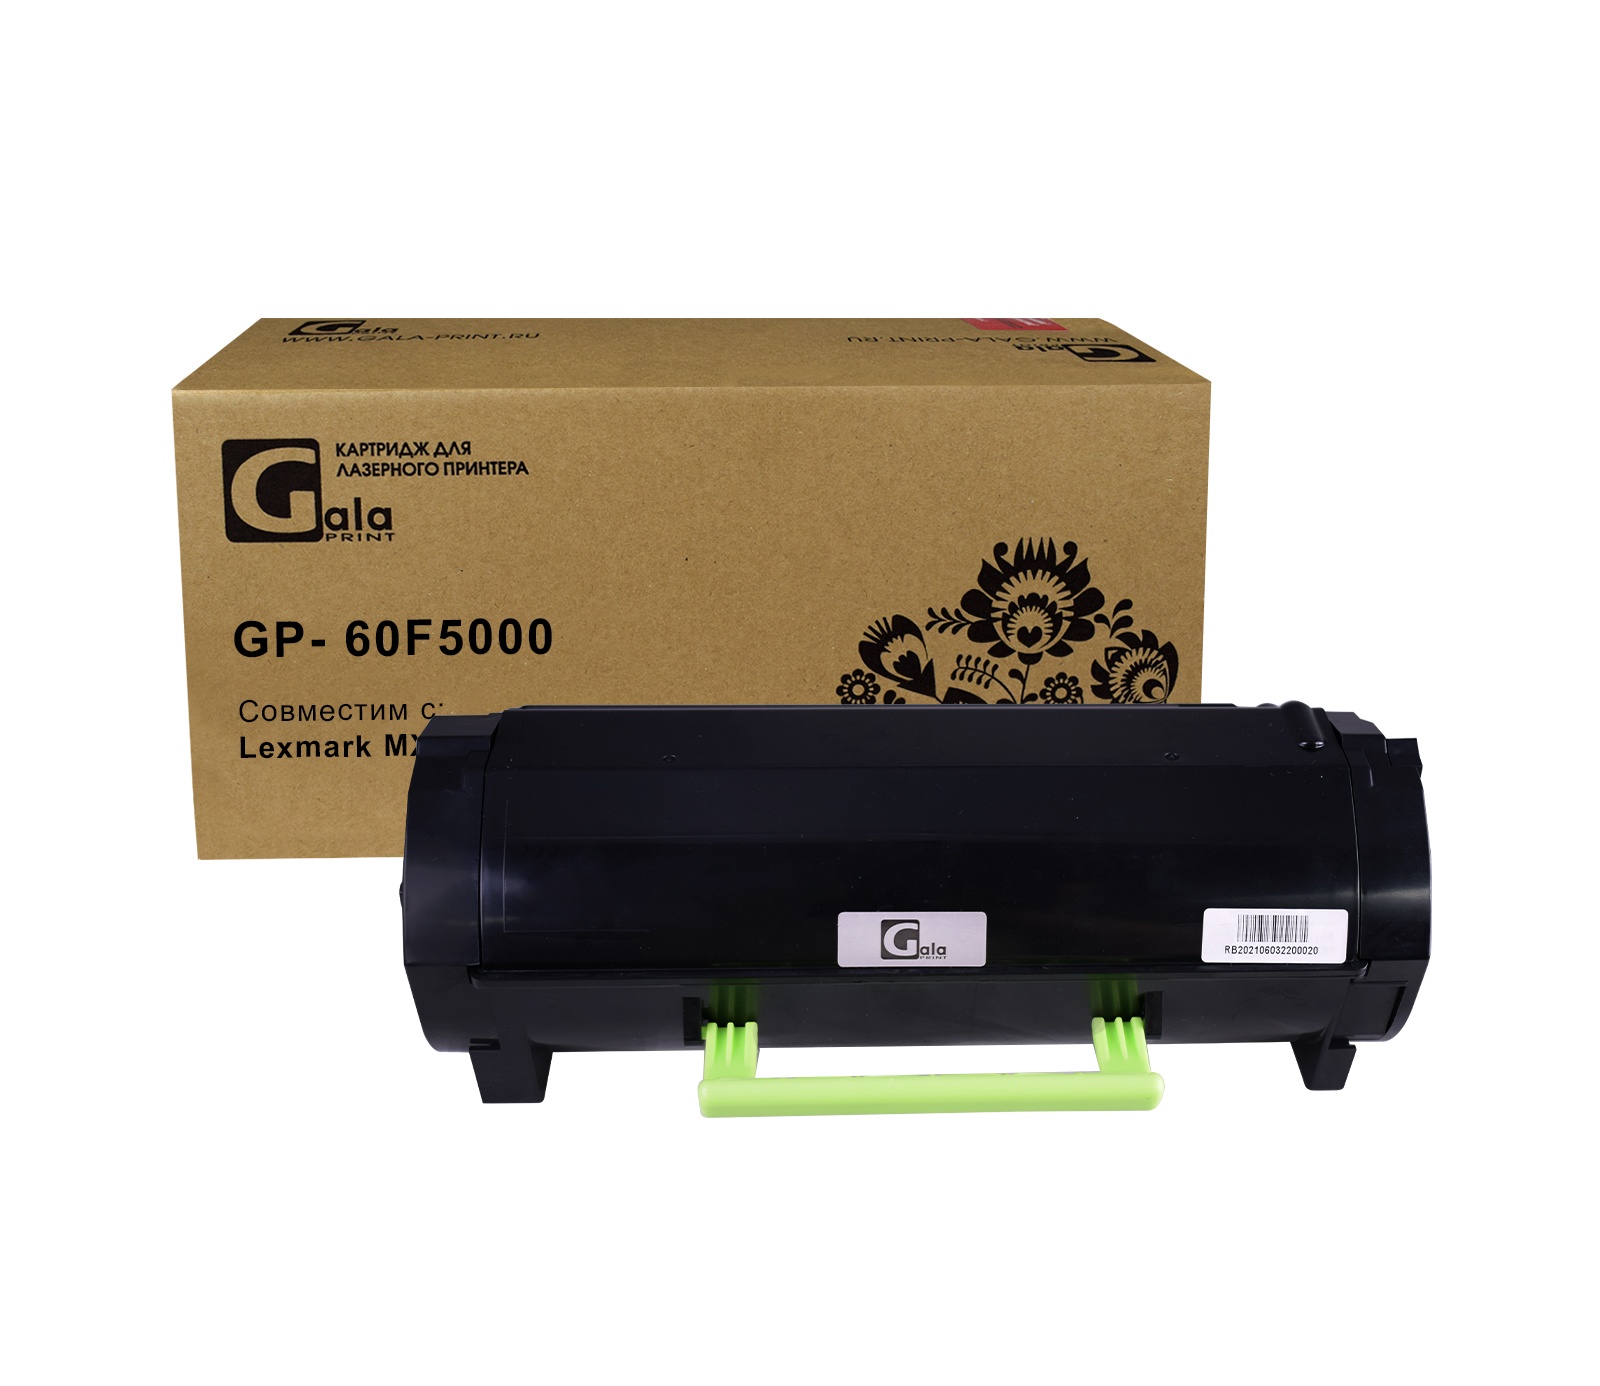 Картридж GP- 60F5000 для принтеров Lexmark MX310dn GalaPrint